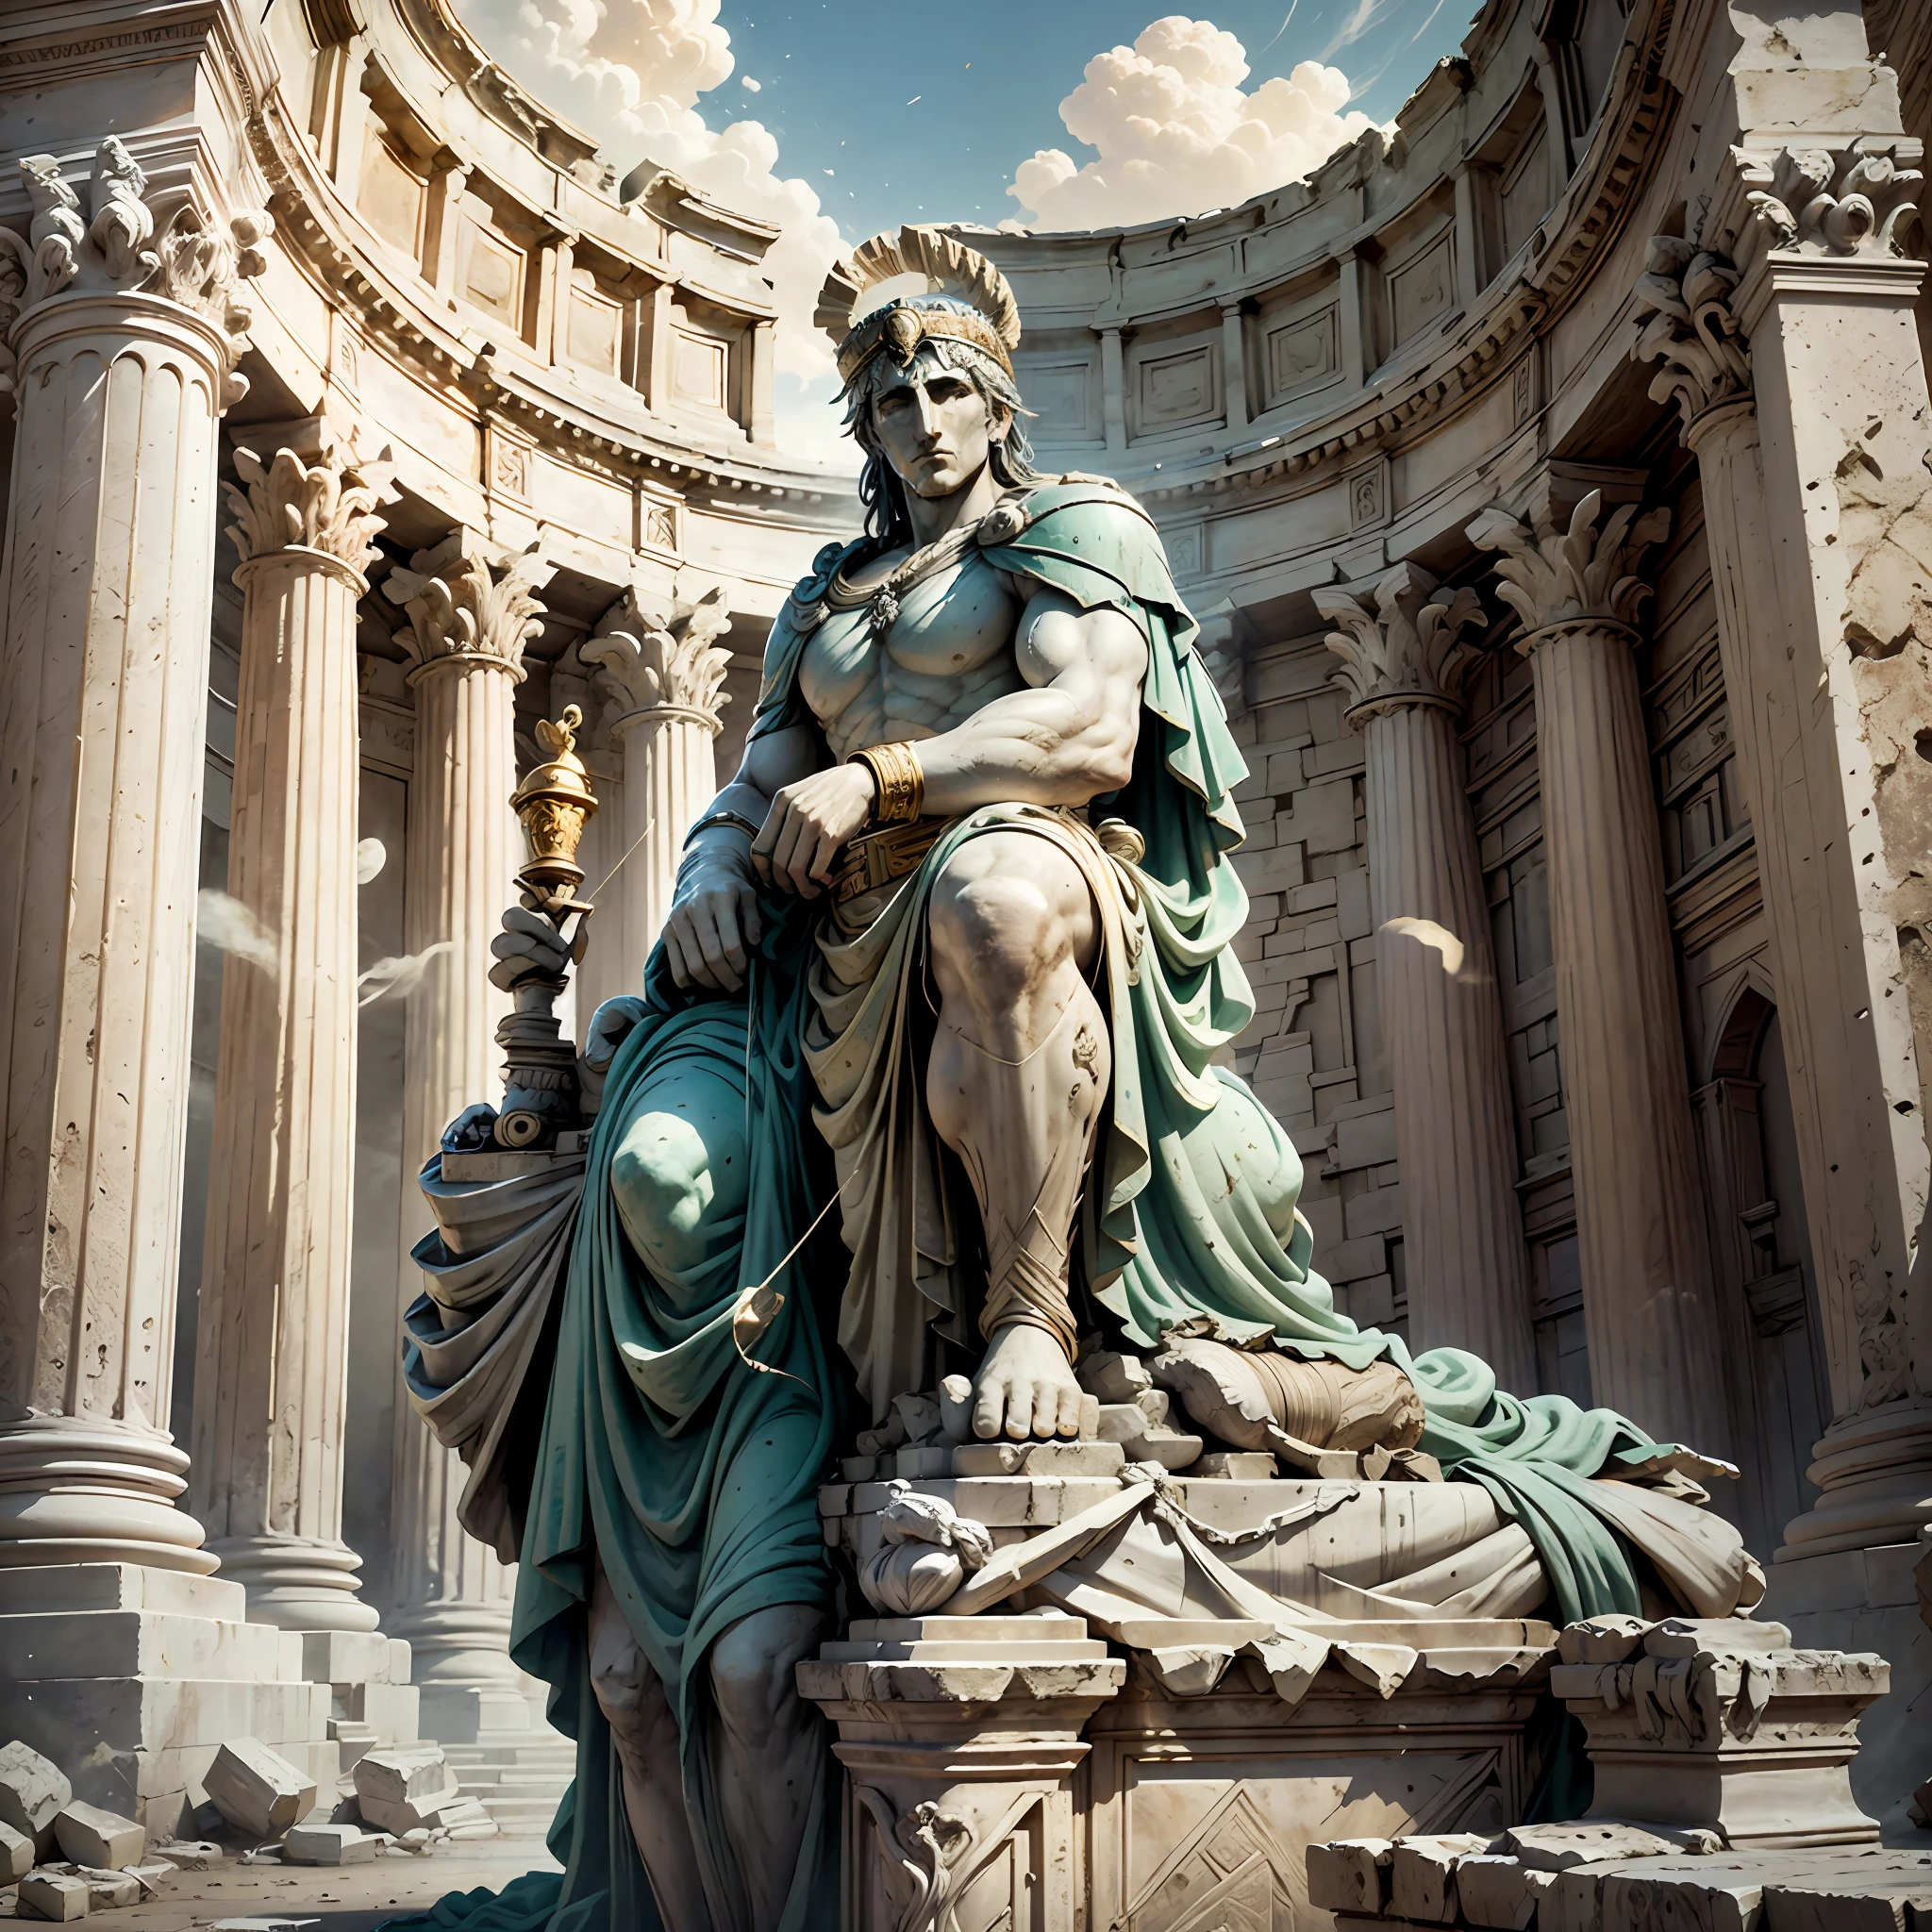 روج قيصر لعبادة جوبيتر كابيتولينوس, الإله الرئيسي للبانثيون الروماني. قام بإعادة بناء وتوسيع معبد جوبيتر كابيتولين على تل كابيتولين في روما, مما يجعلها واحدة من أروع المعابد وأكثرها روعة في المدينة. --تلقائي --s2